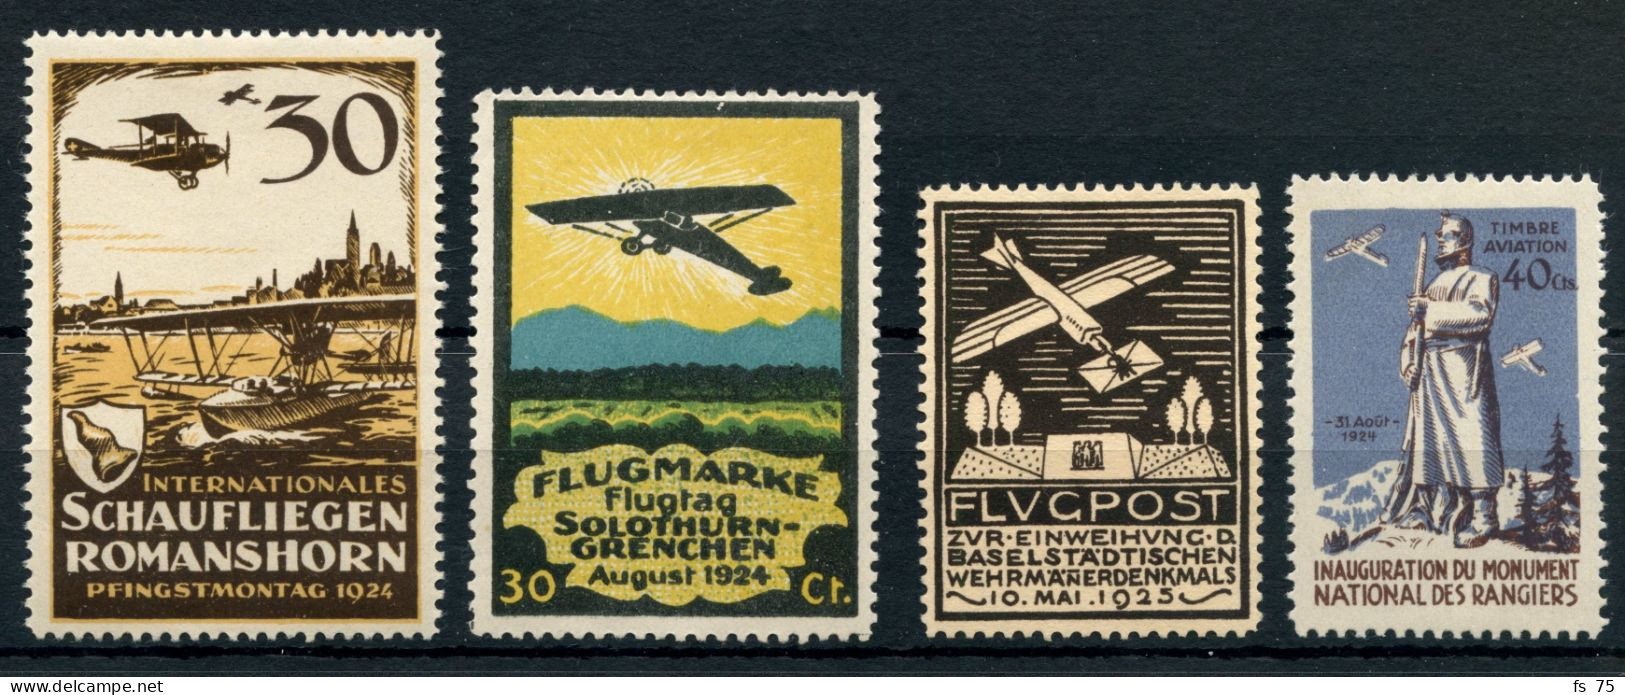 SUISSE - POSTE AERIENNE - LOT DE 4 TIMBRES SEMI-OFFICIELS * - Unused Stamps